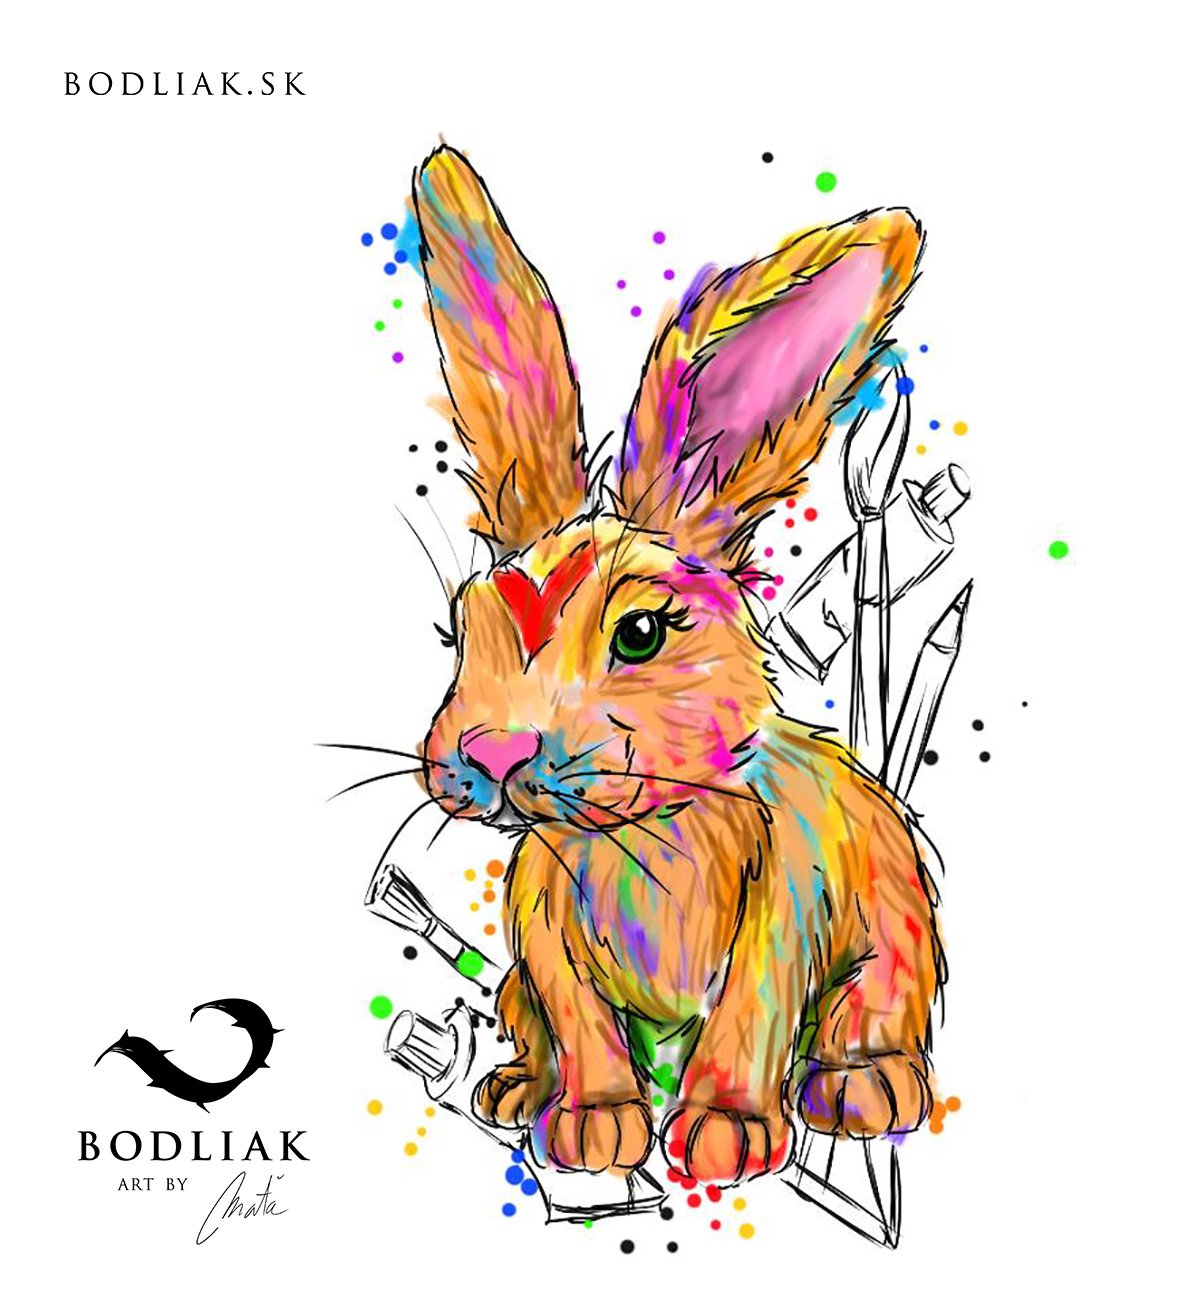  bodliak-bodliaktattoo-volny-motiv-tetovanie-tattoo-colourtattoo-design-mata-zajac-rabbit-art 